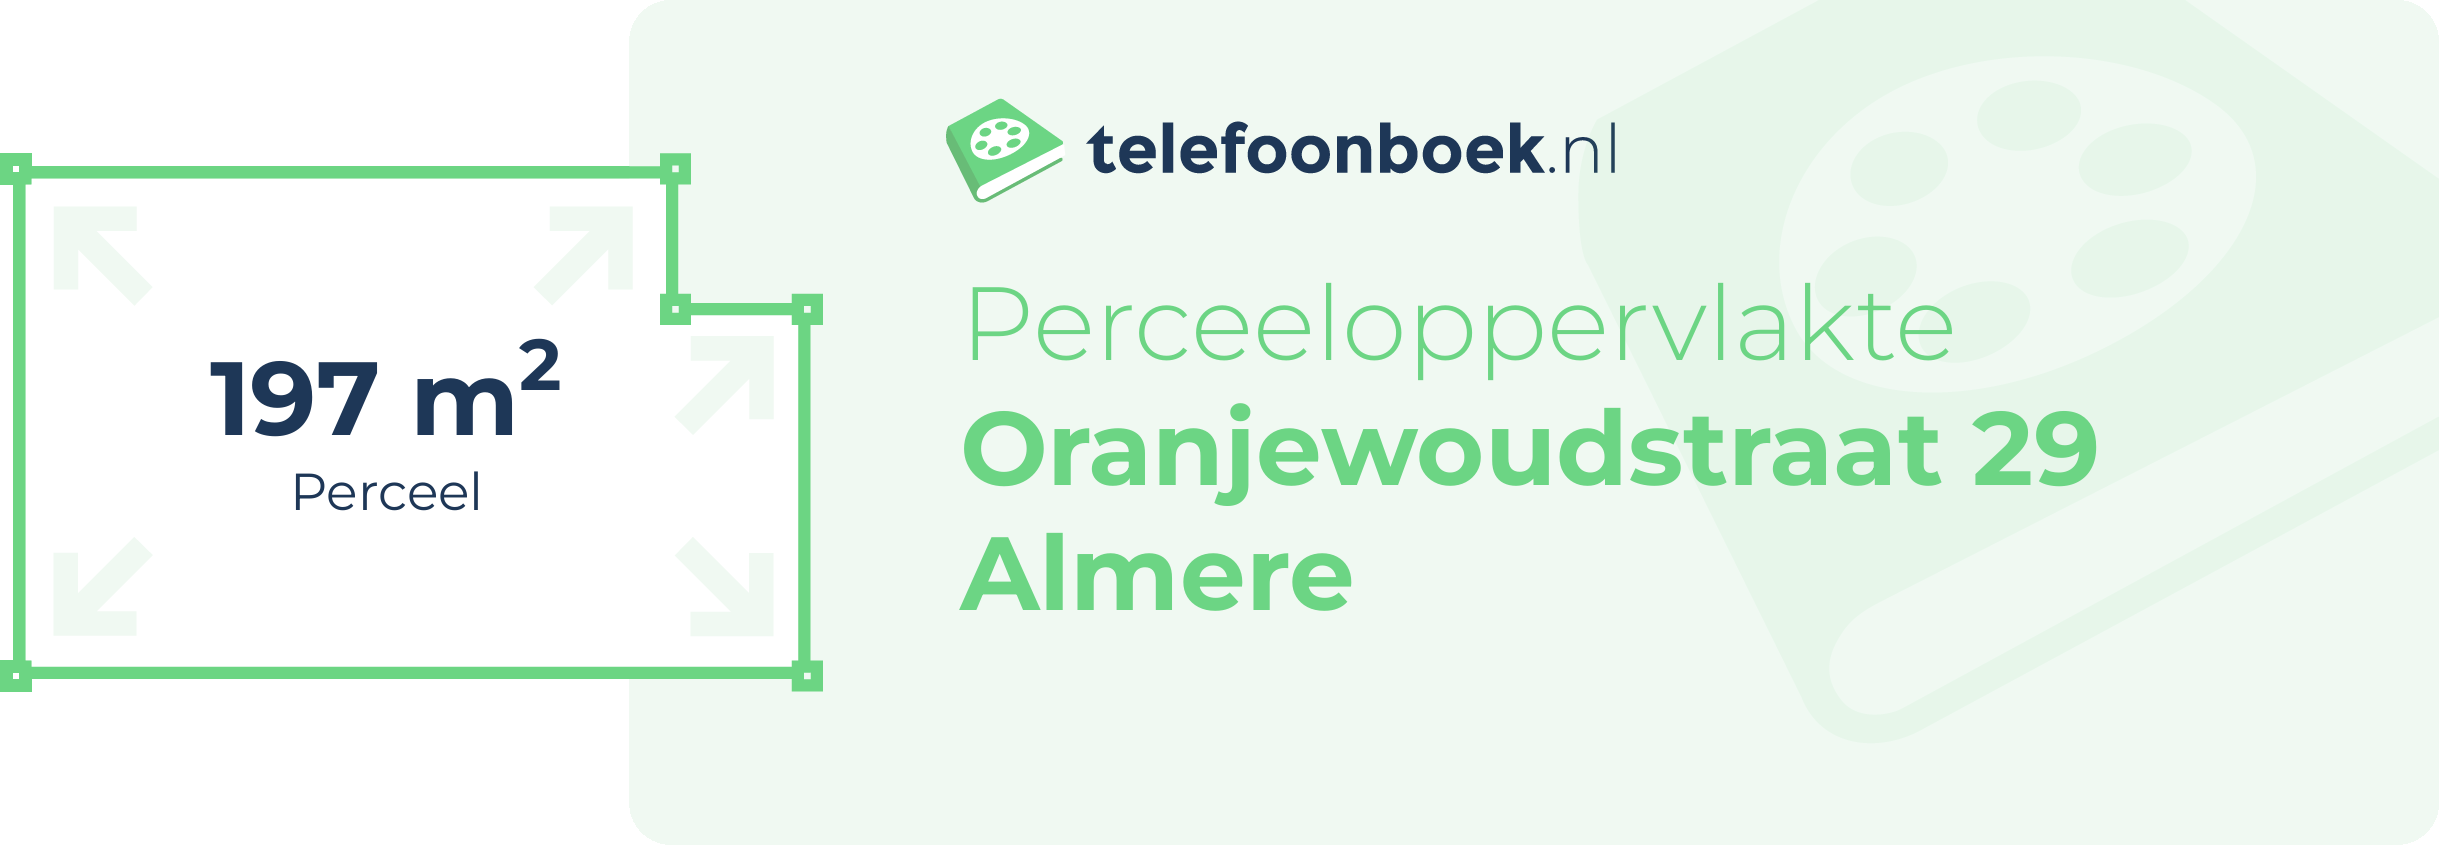 Perceeloppervlakte Oranjewoudstraat 29 Almere